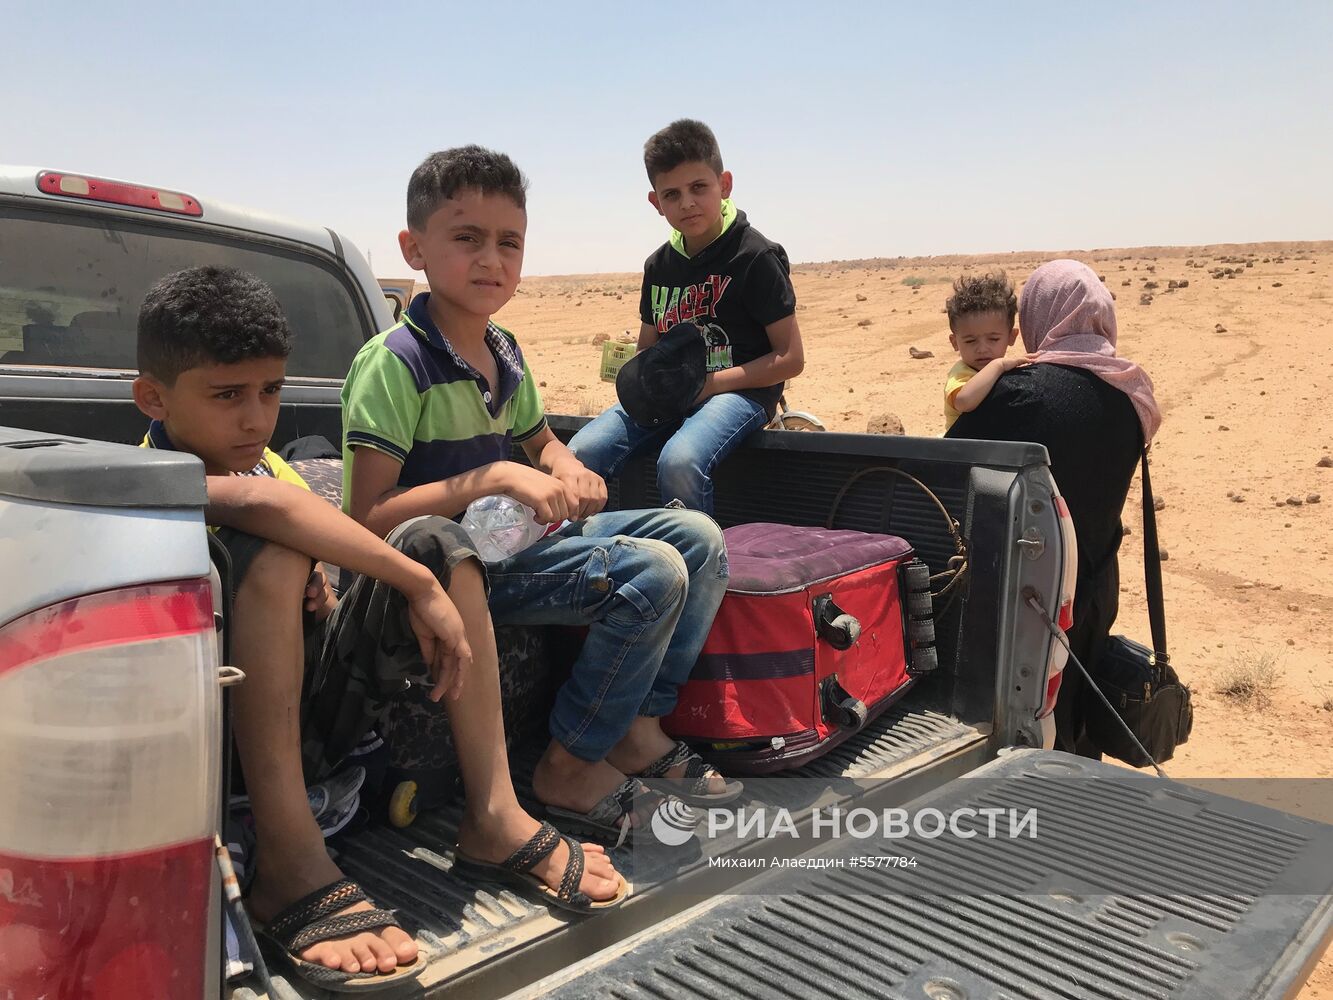 Сирийские войска вышли к границе с Иорданией в провинции Дераа